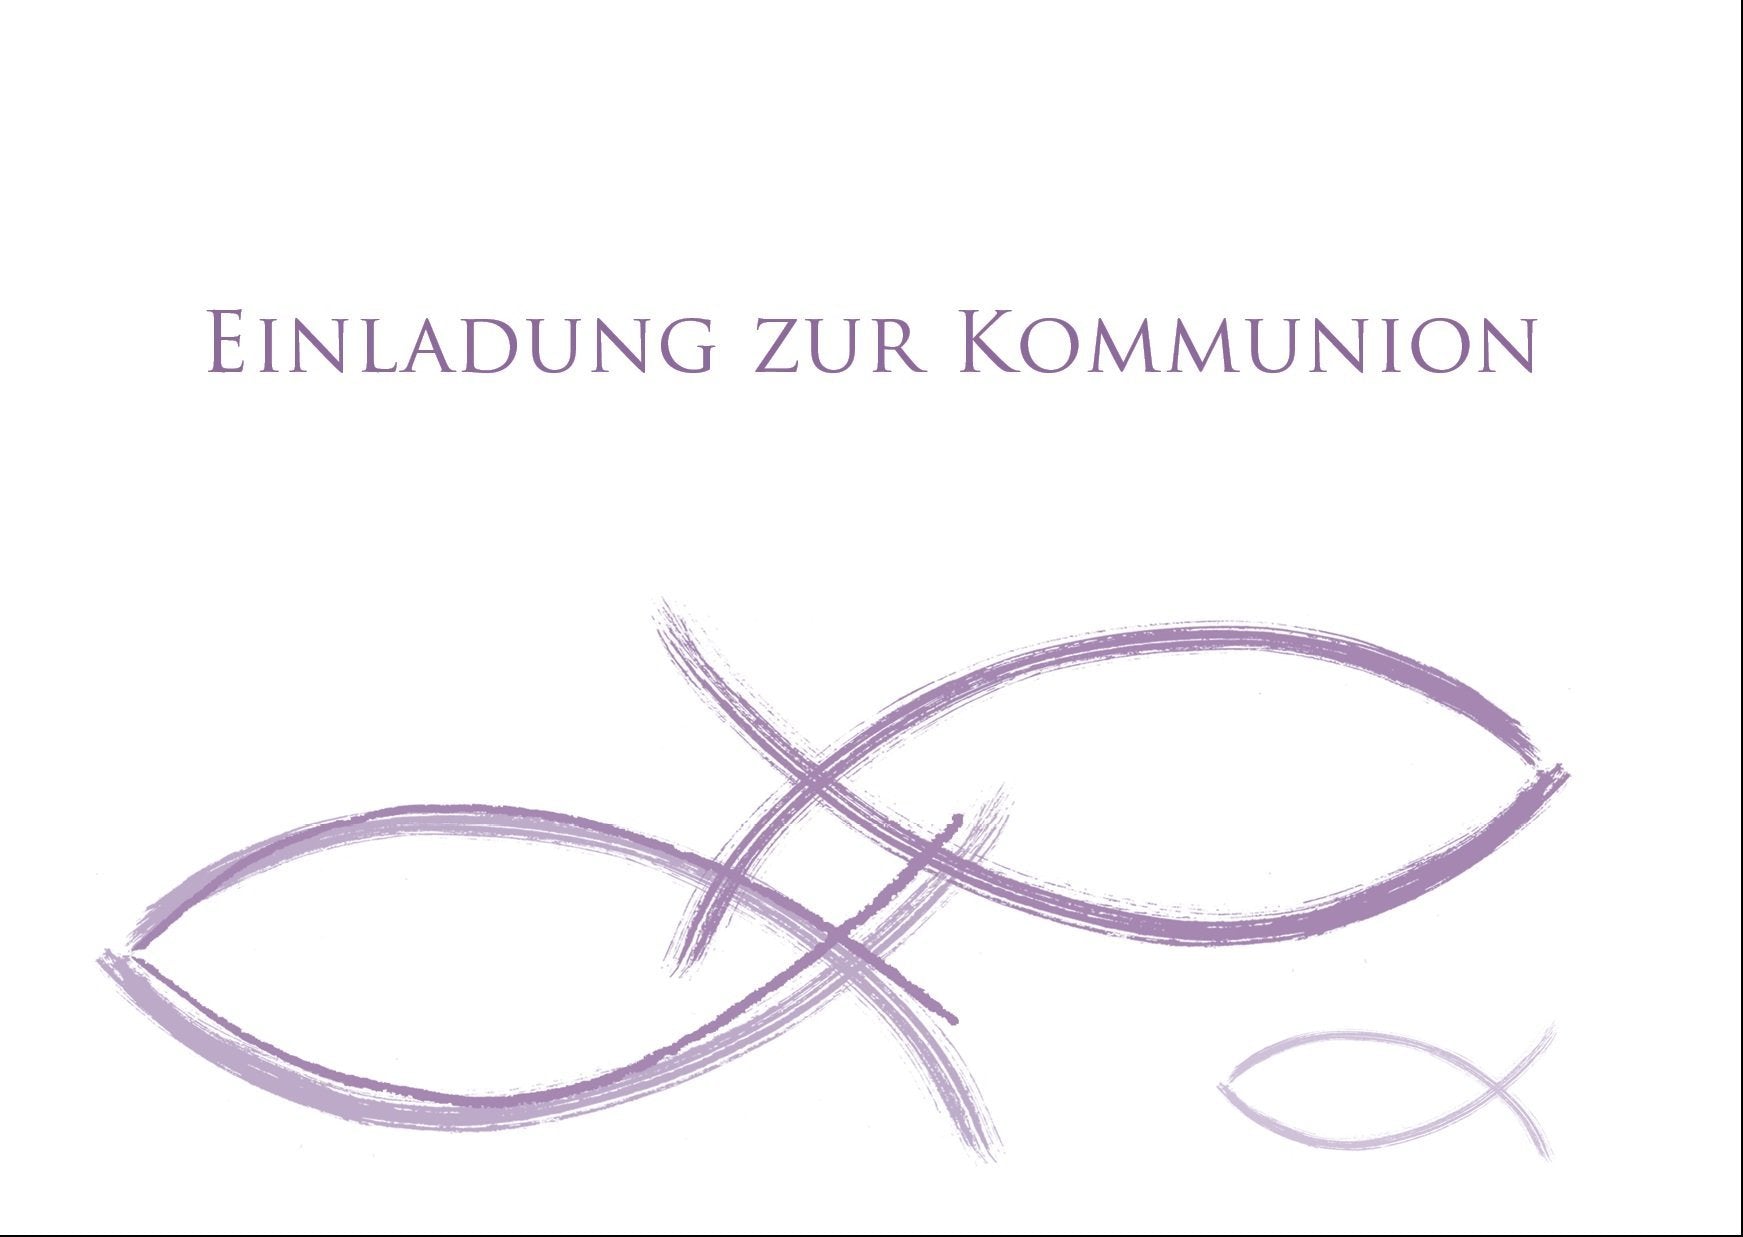 Einladung zur Kommunion: Fisch Motiv - Handgezeichnet Individuelle Einladung